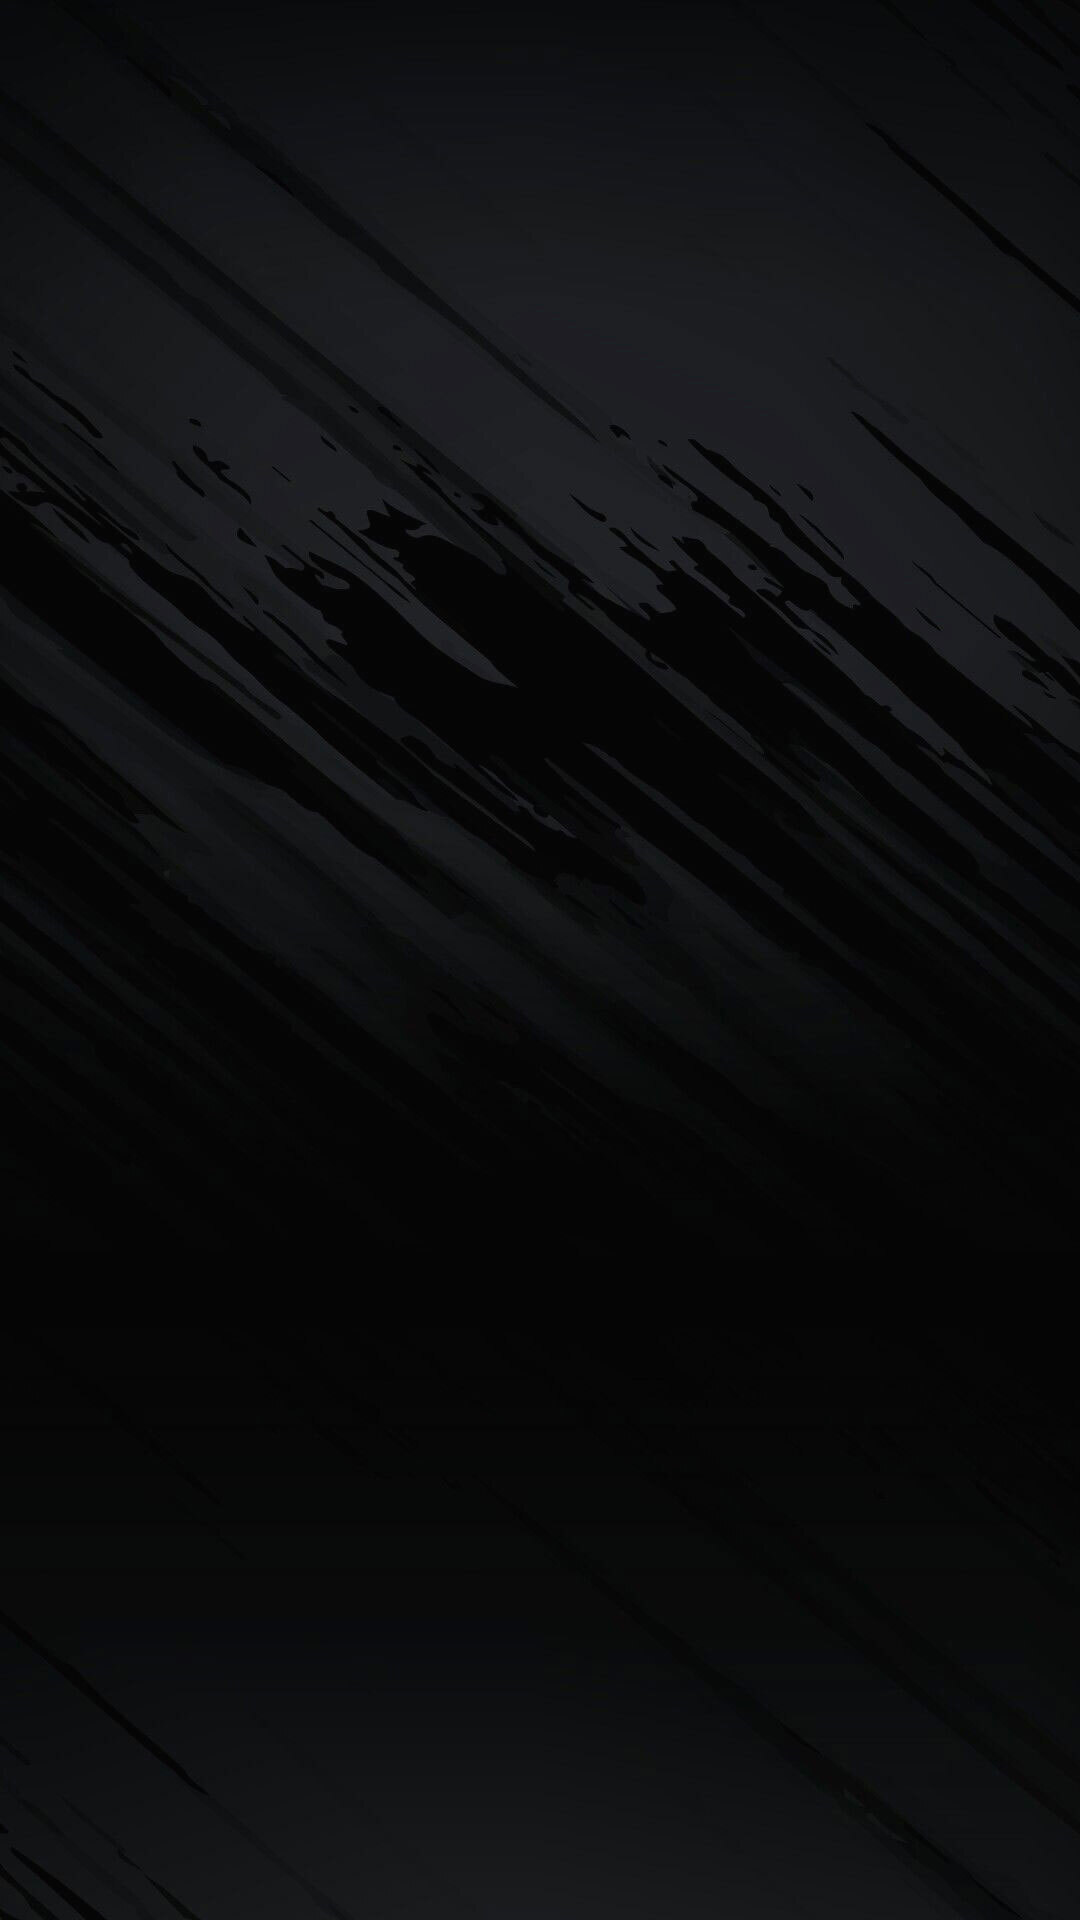 Hình nền hoàn hảo về màu đen cho màn hình AMOLED  Fptshopcomvn